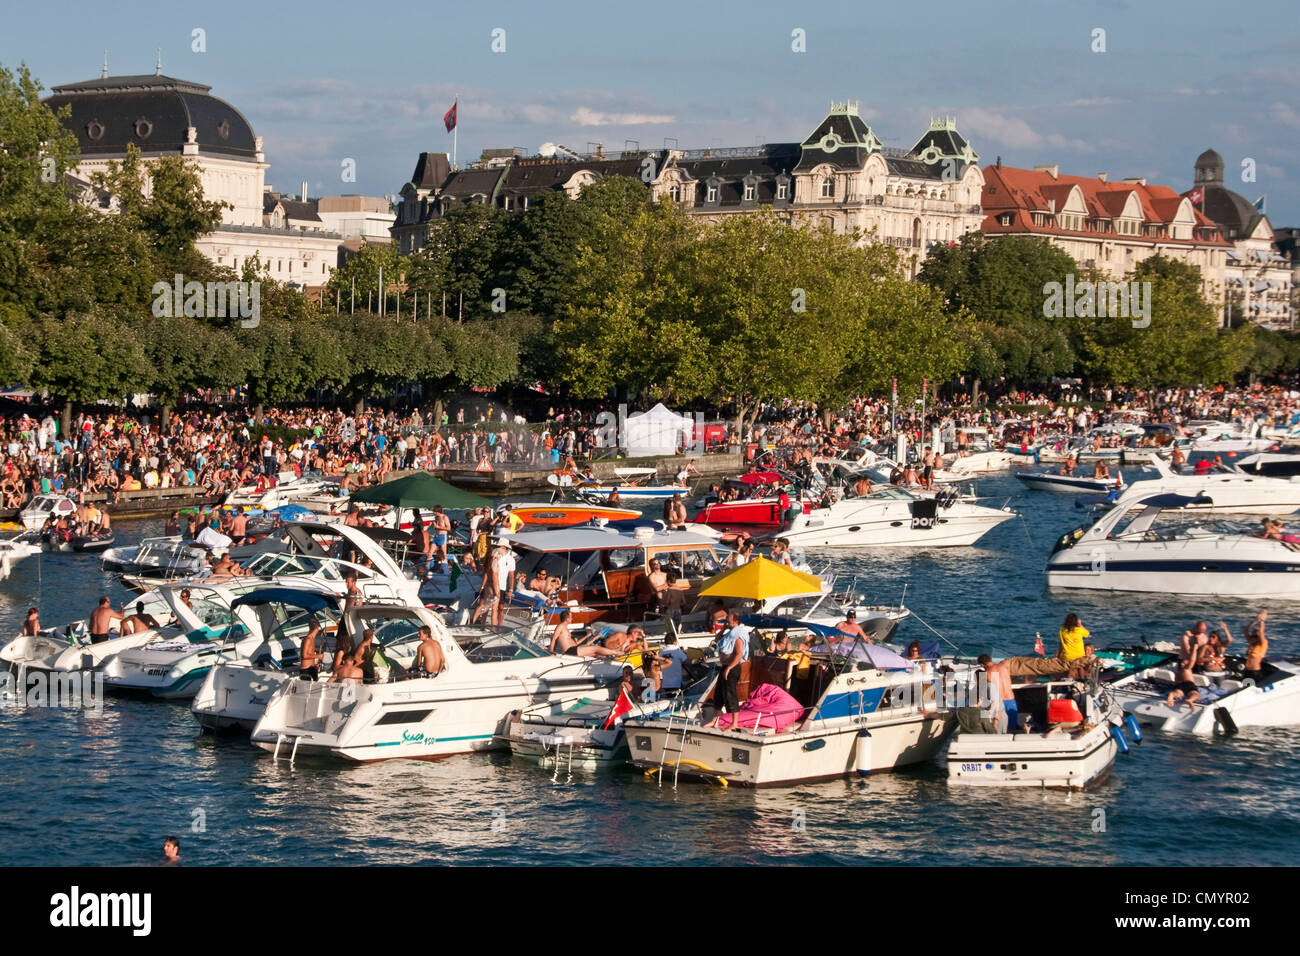 La Suisse, Zurich, street parade, bateaux sur le lac de Zurich Banque D'Images